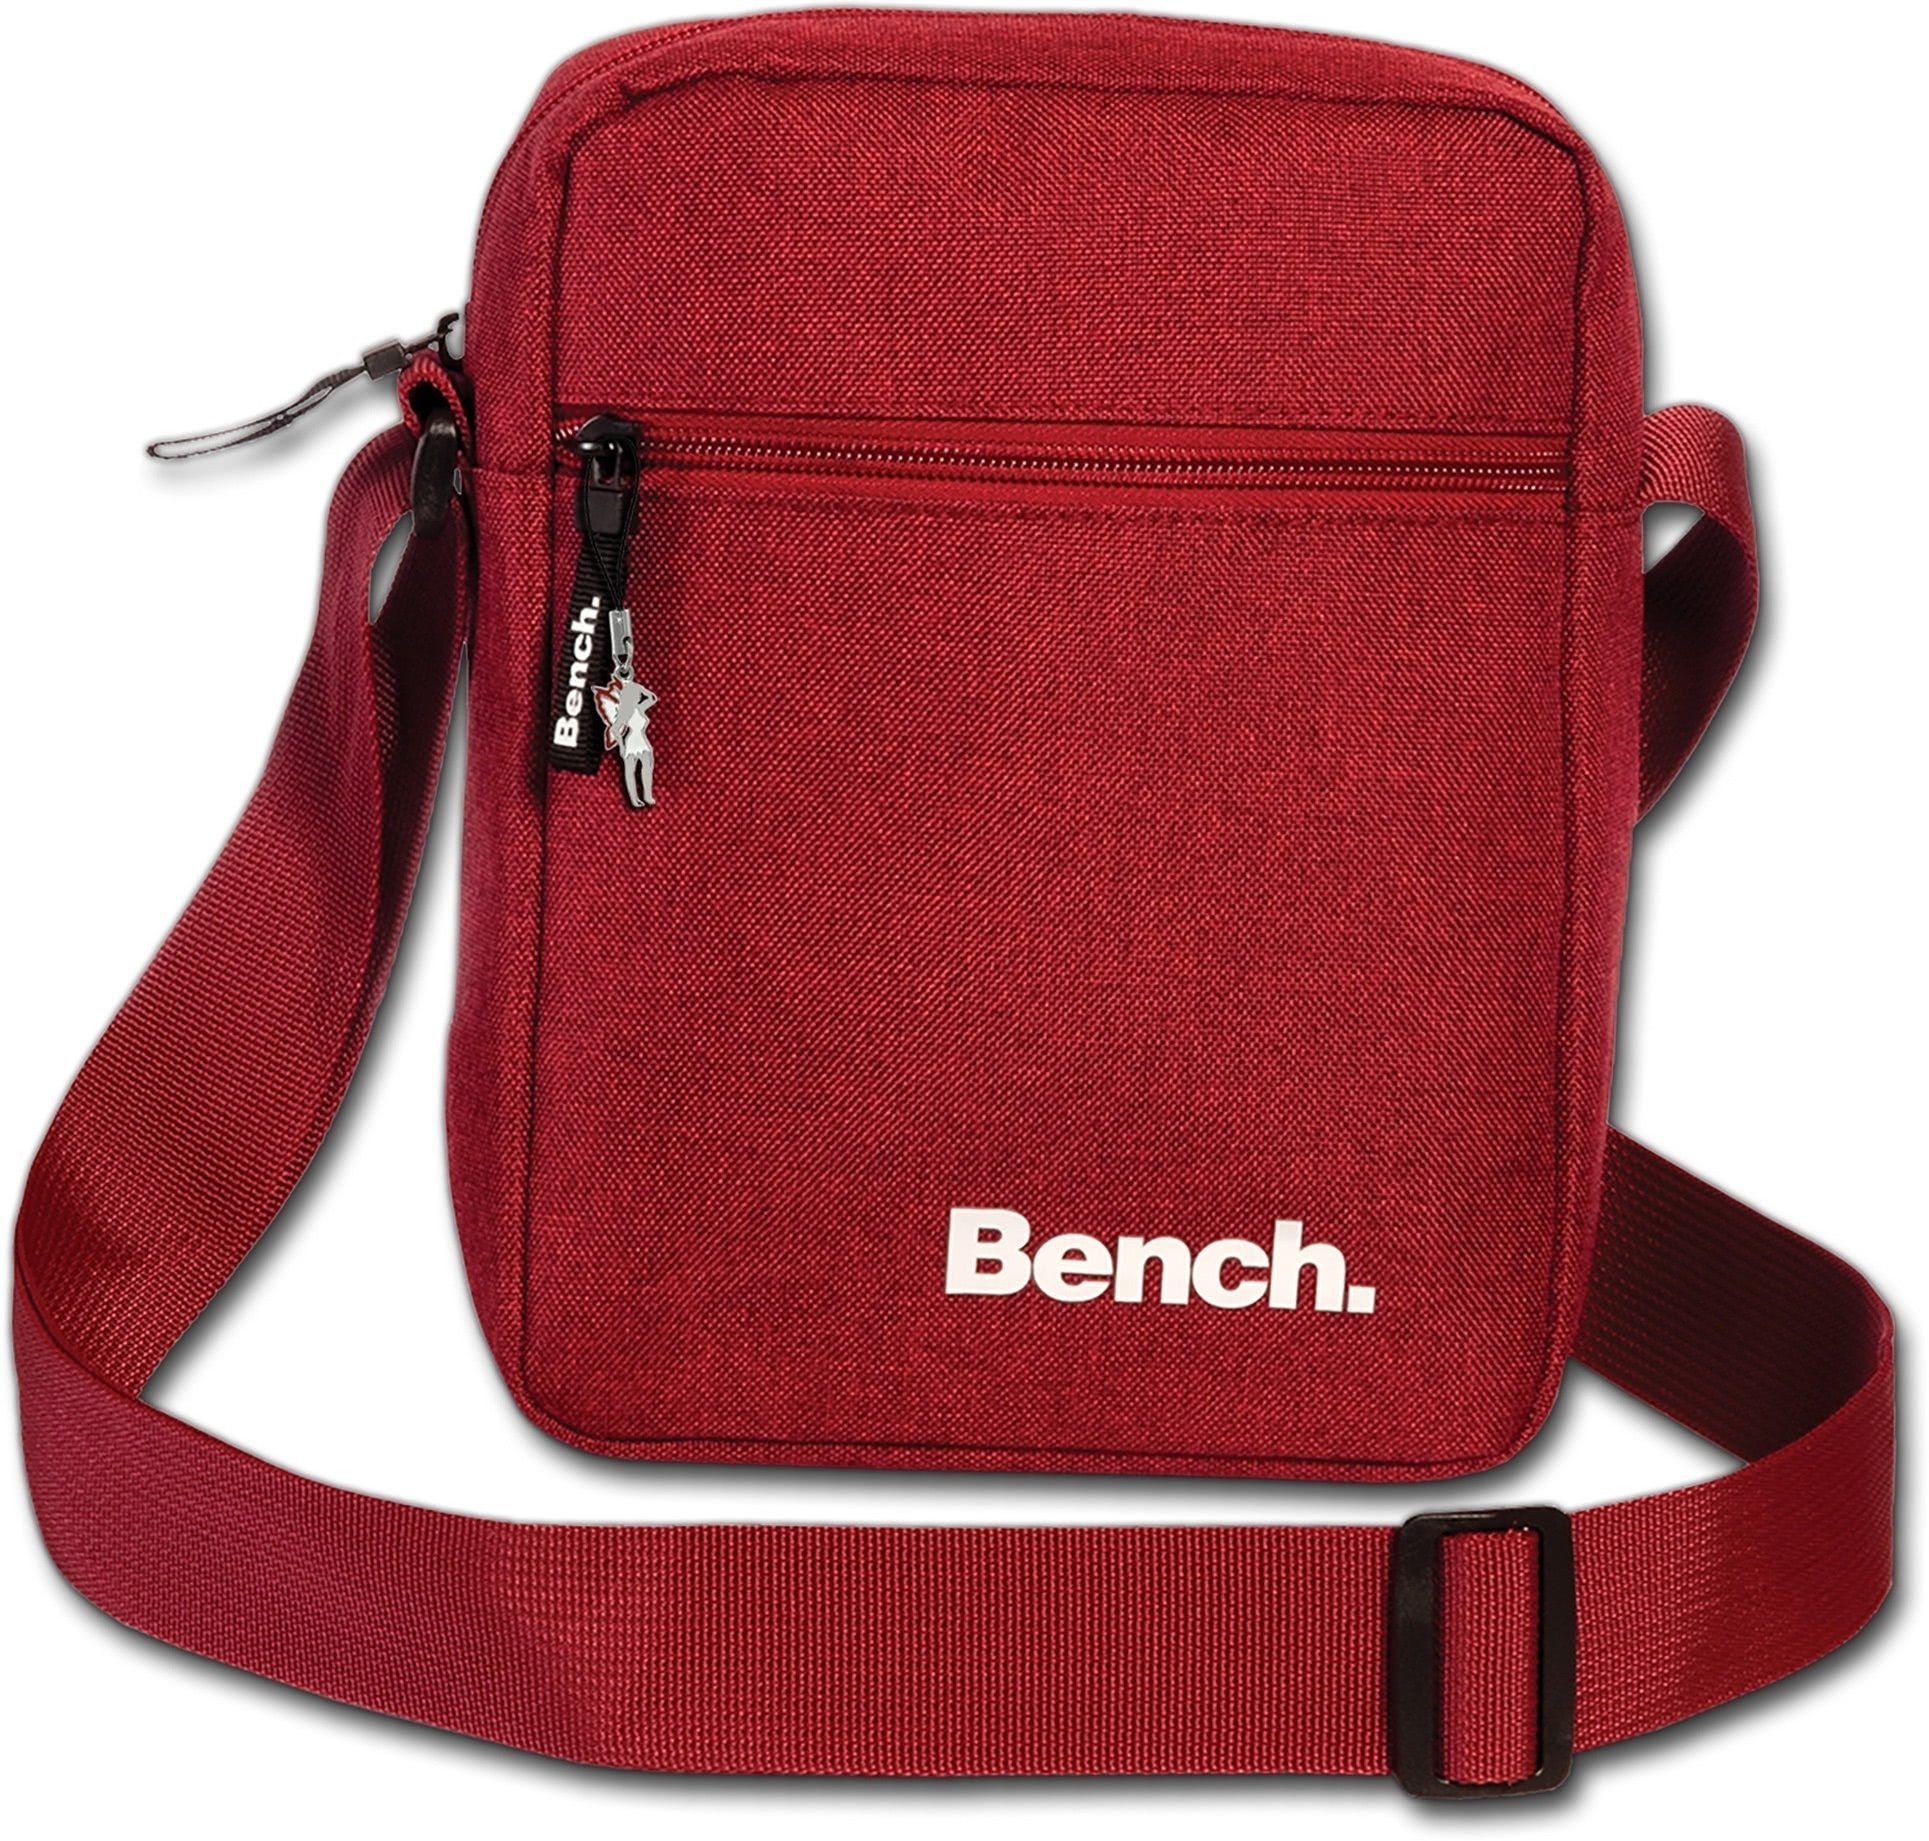 Bench. Umhängetasche »D2OTI301R Bench sportliche Umhängetasche rot« ( Umhängetasche), Damen, Jugend Tasche aus Polyester, Größe ca. 17cm in rot  online kaufen | OTTO